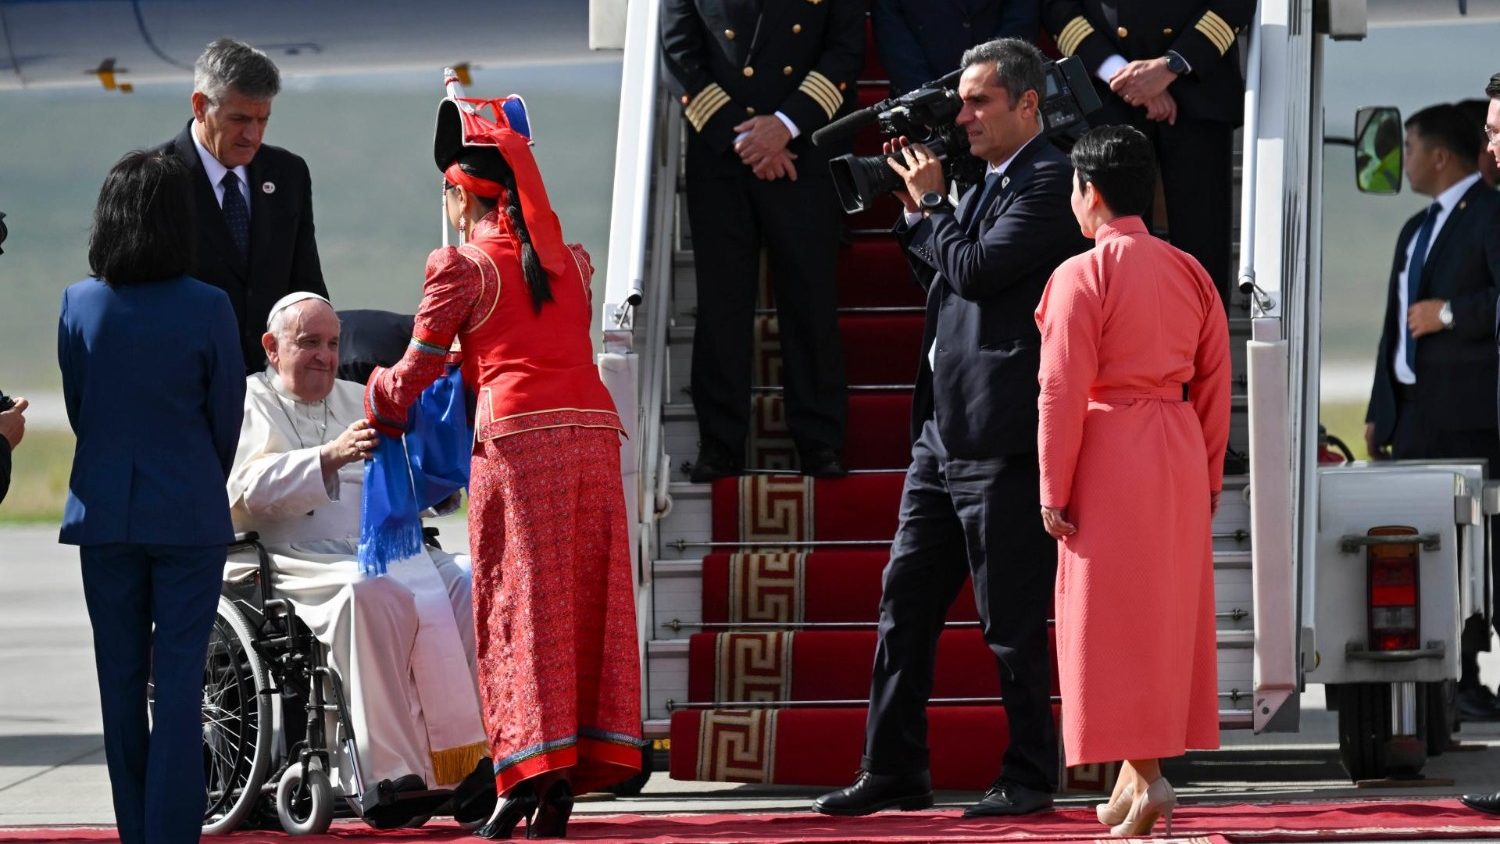 Papa inicia visita à Mongólia e envia mensagem 'unidade e paz' à China